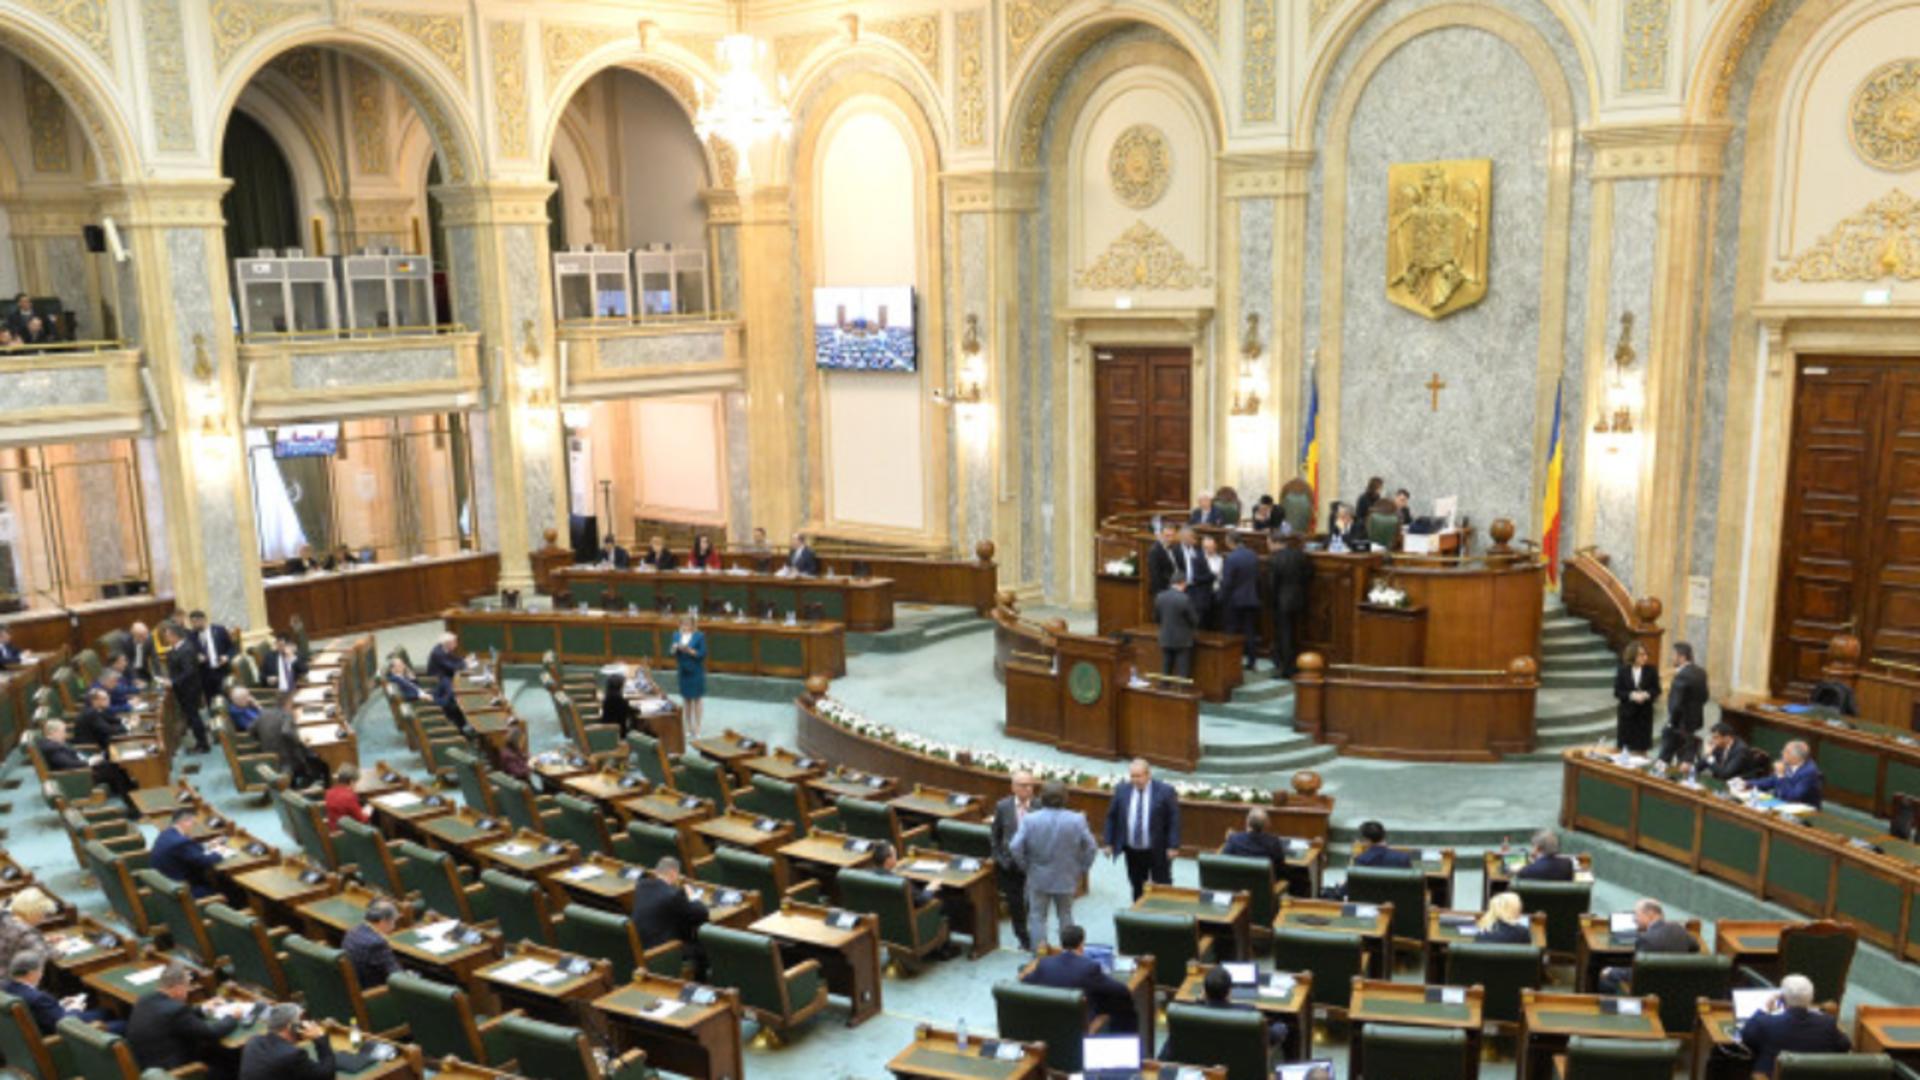 Senatorii s-au blocat în votarea legii împotriva instigării la ură. Foto/Inquam